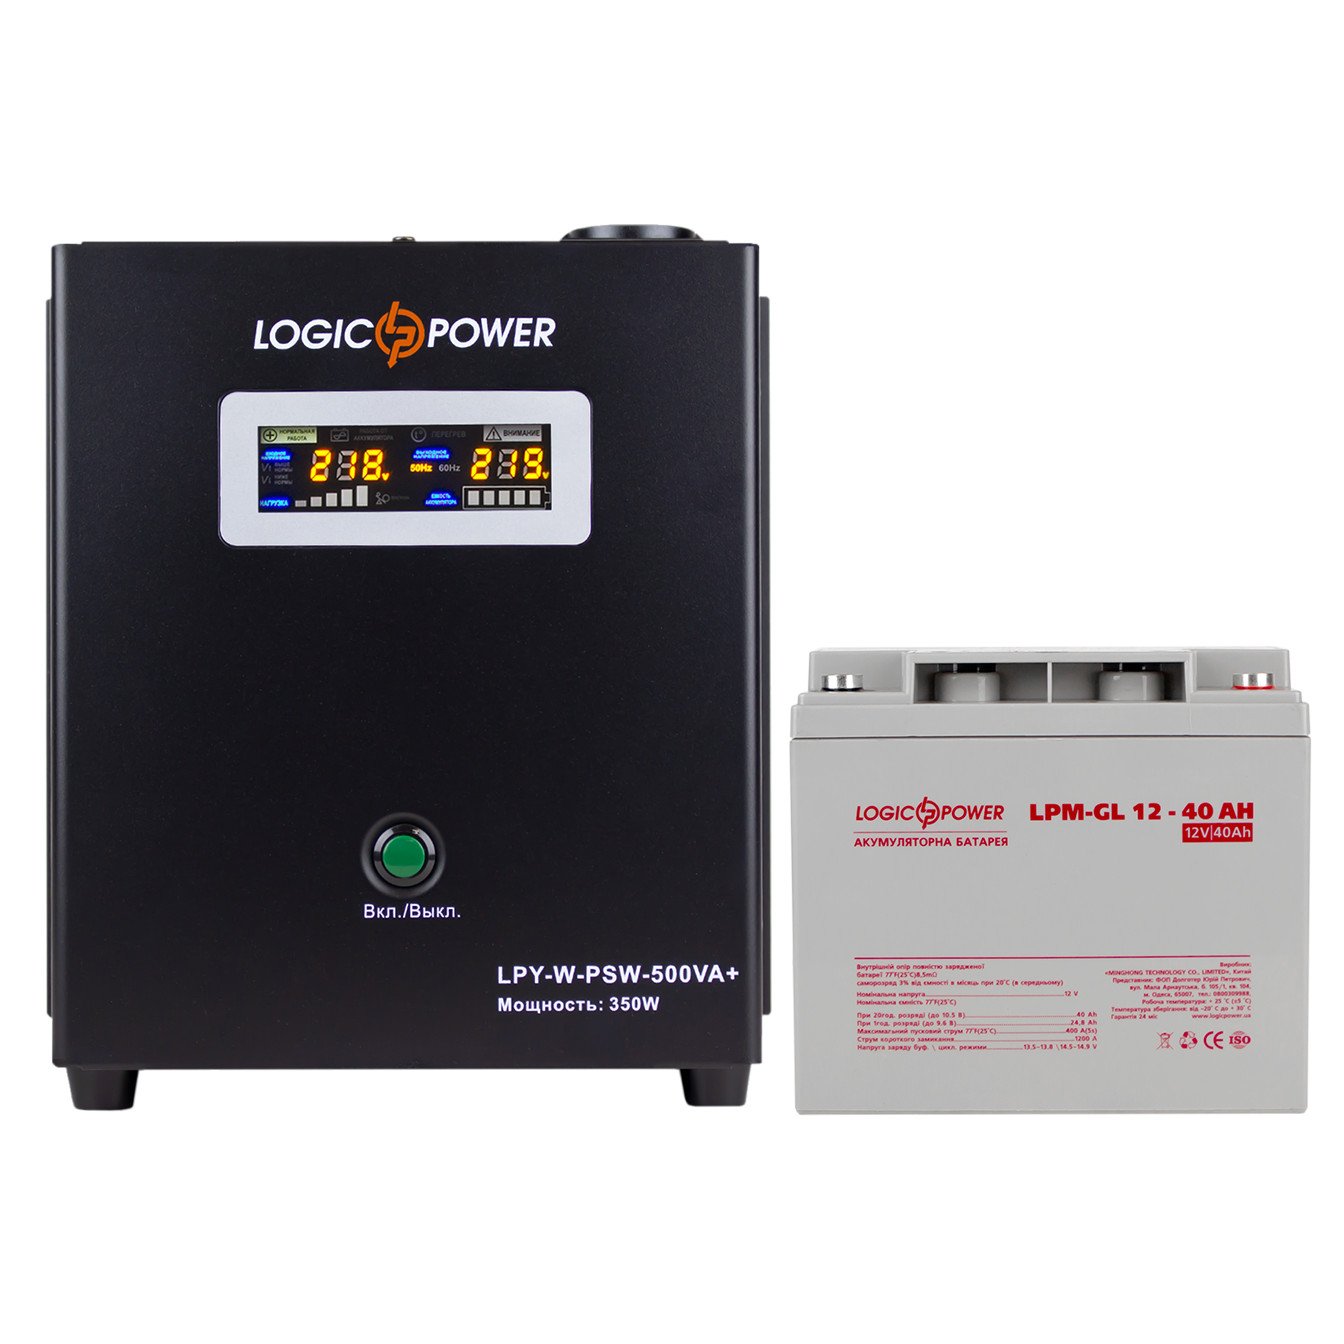 LogicPower W500 + гелевая батарея 520W (14014) - зображення 1